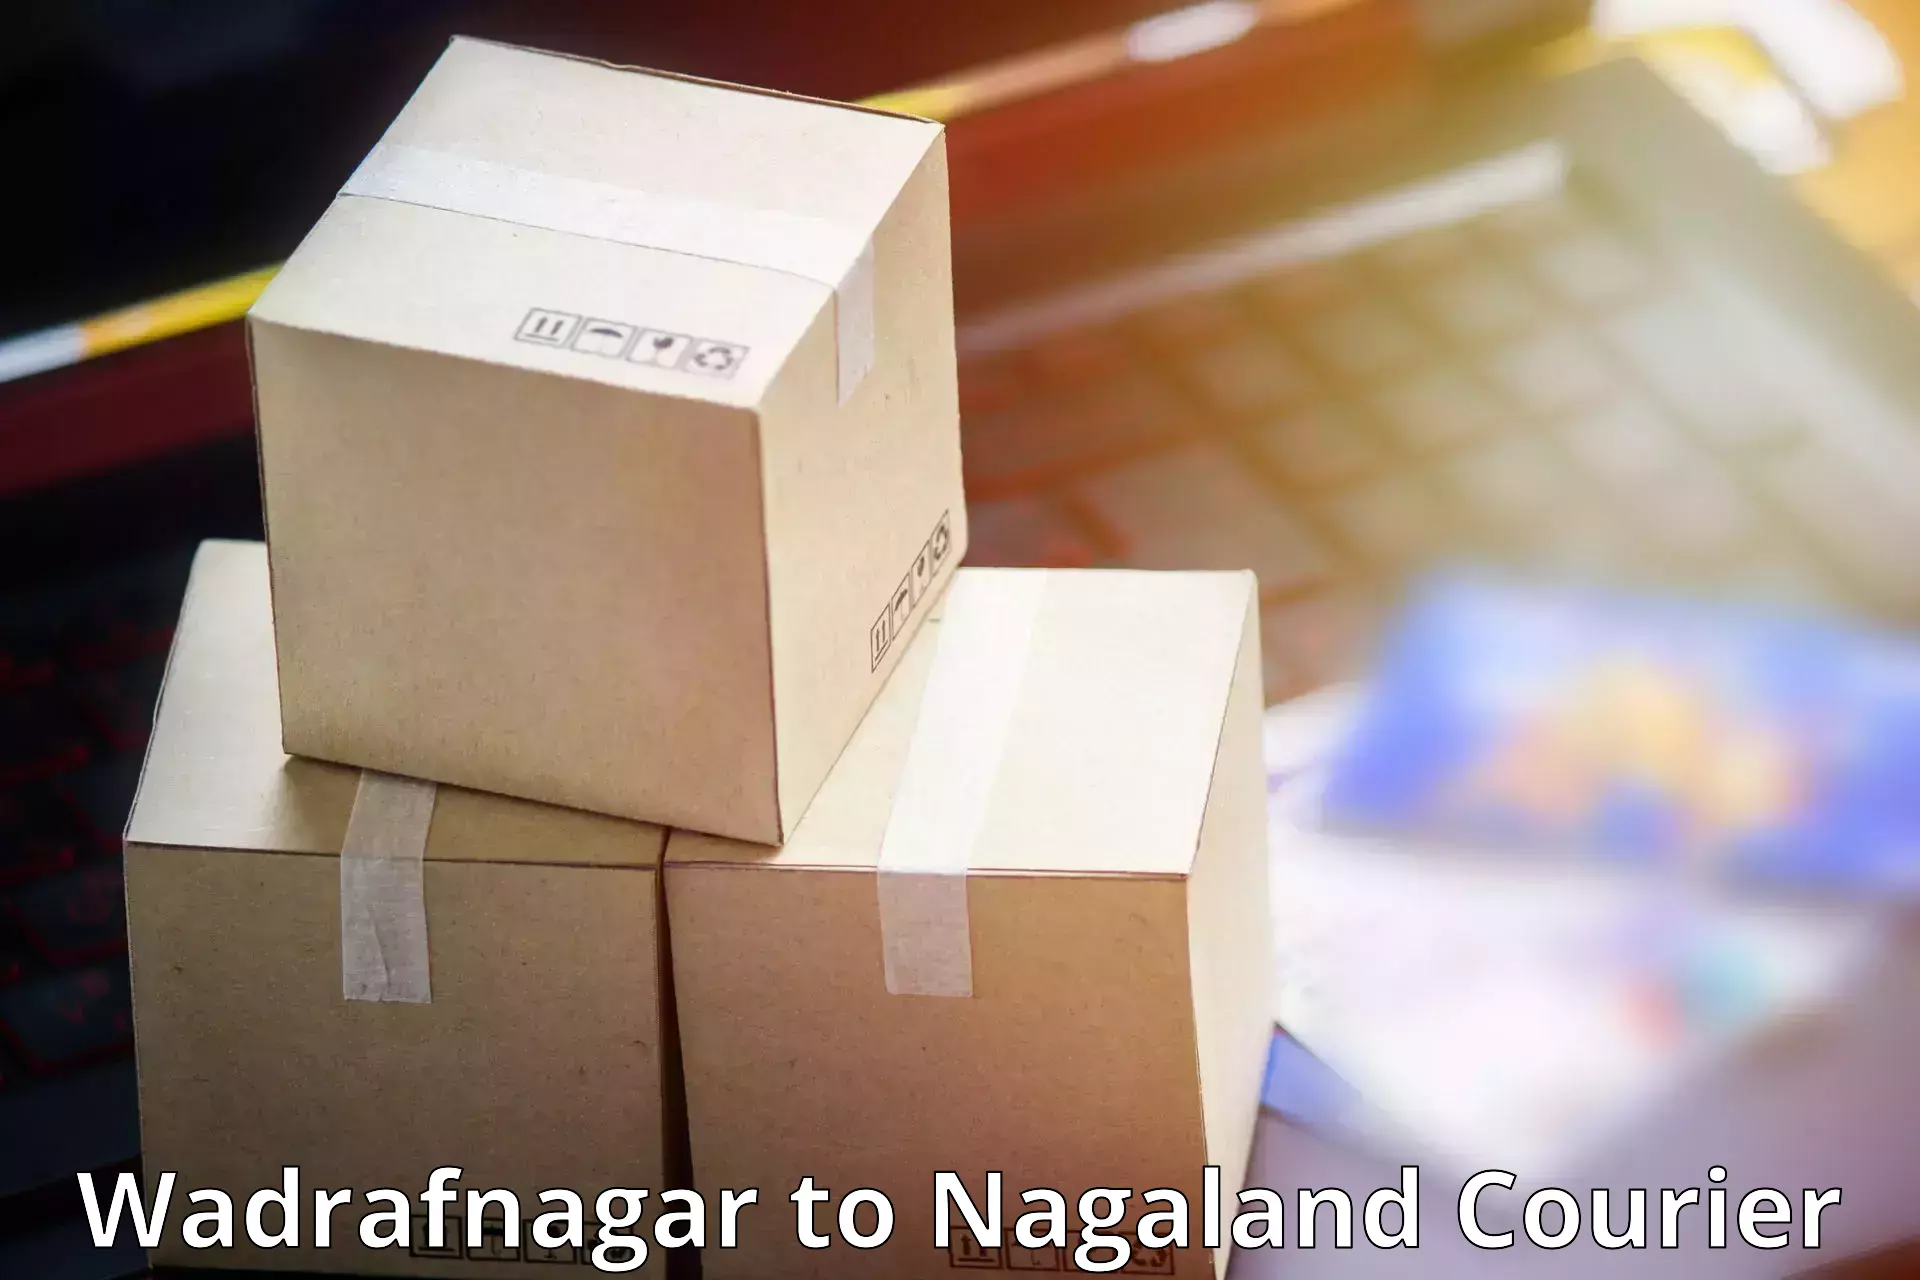 Innovative shipping solutions Wadrafnagar to NIT Nagaland